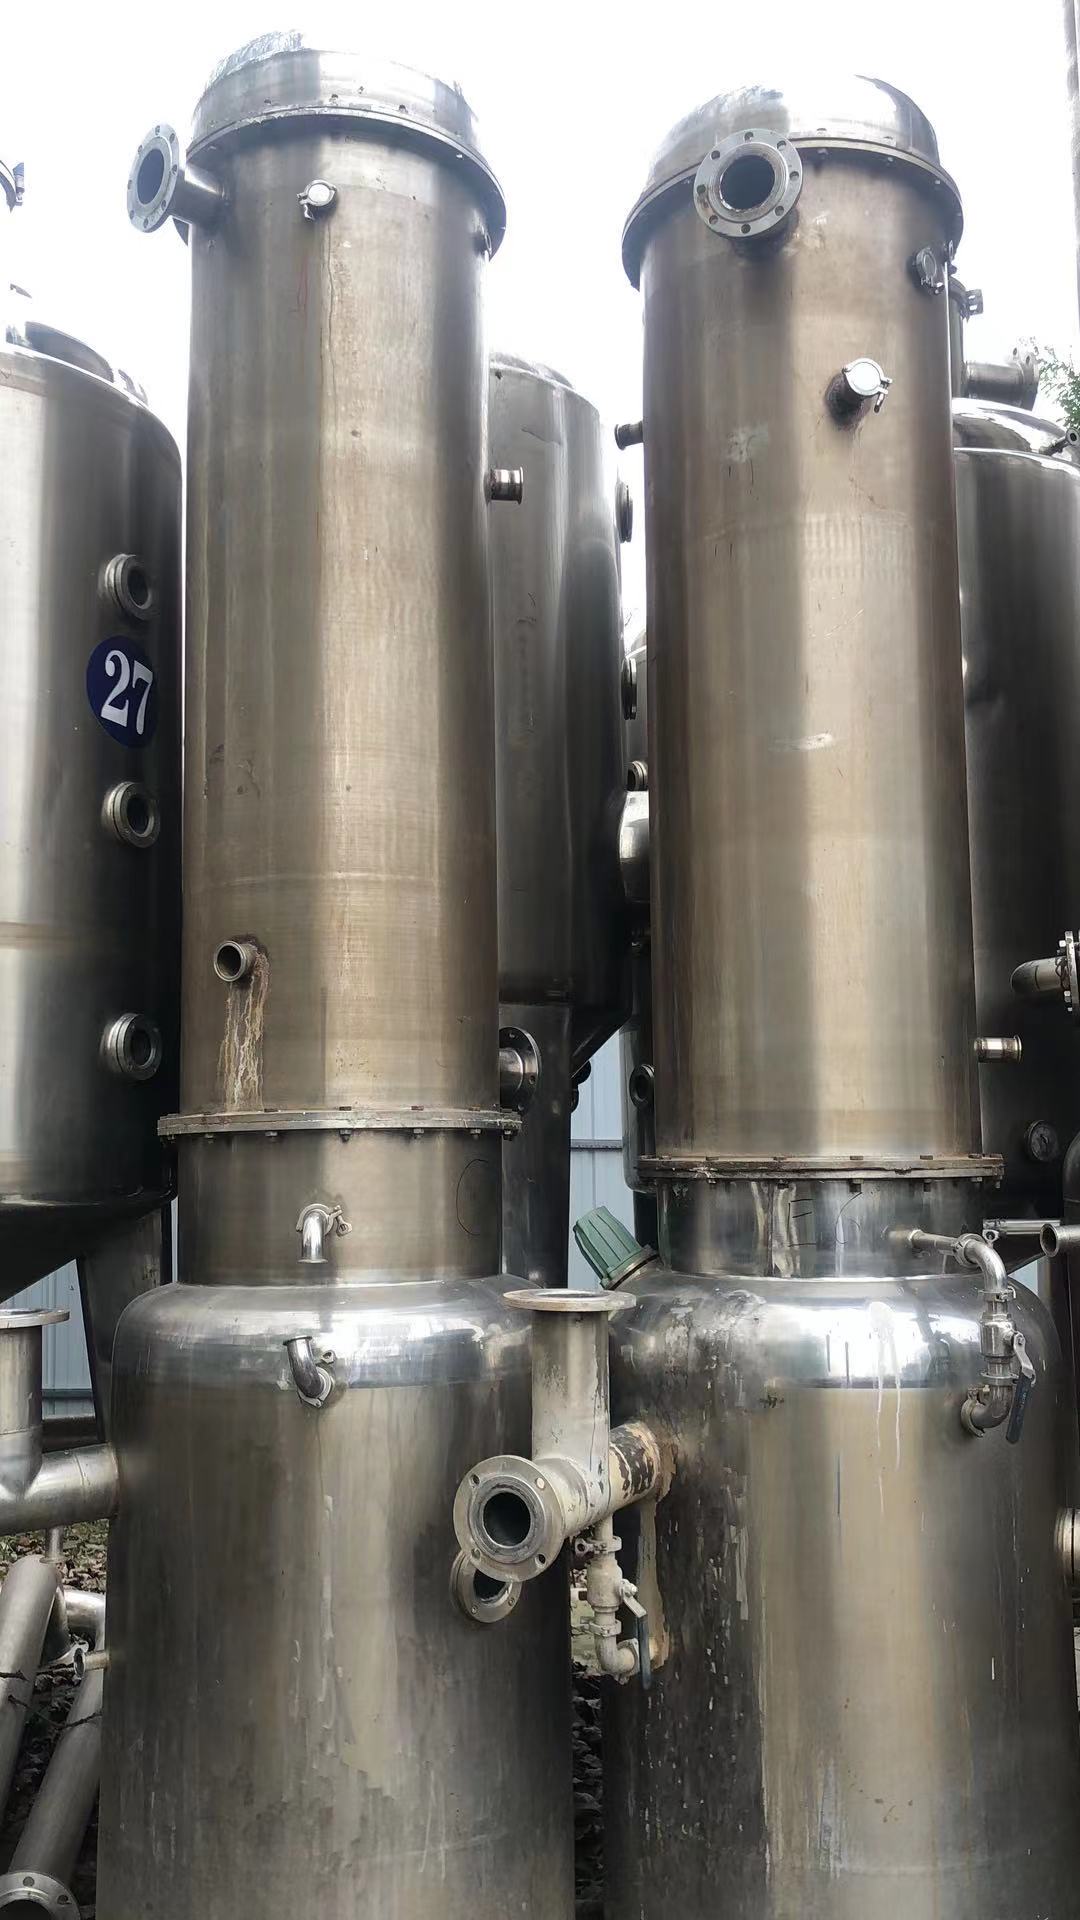 蒸发器 二手双效蒸发器  二手薄膜蒸发器 12吨 晨光化工机械 5吨  来电咨询